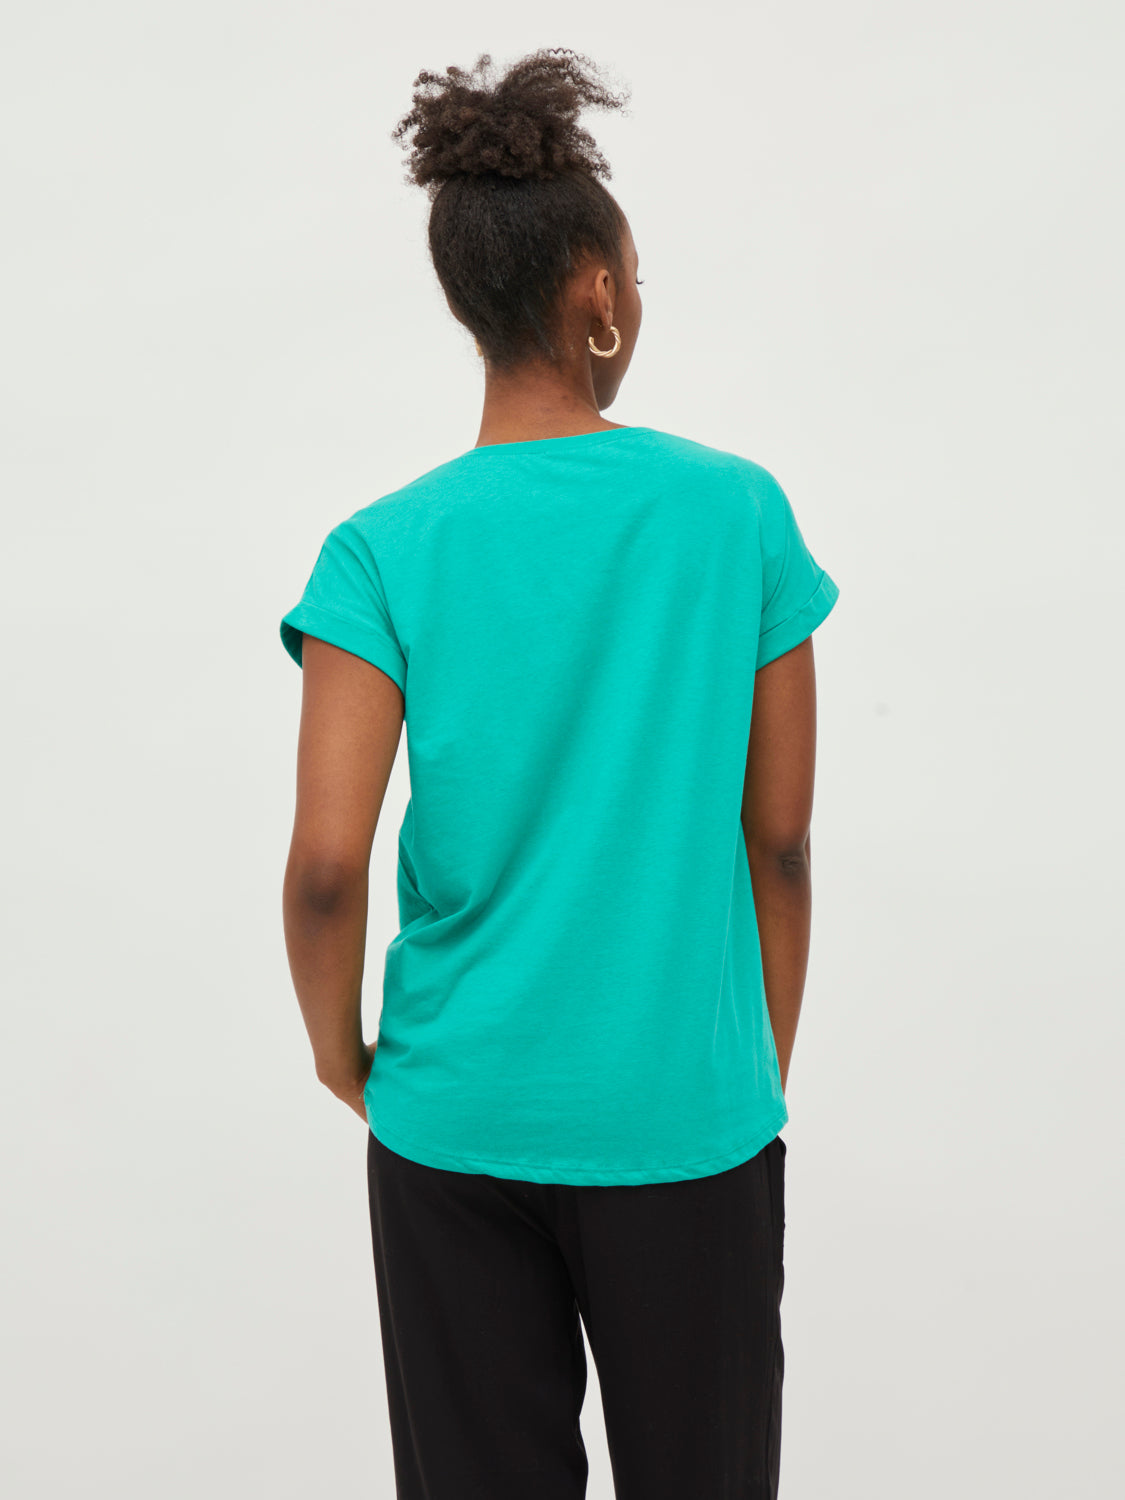 VIDREAMERS T-shirts & Tops - Emerald